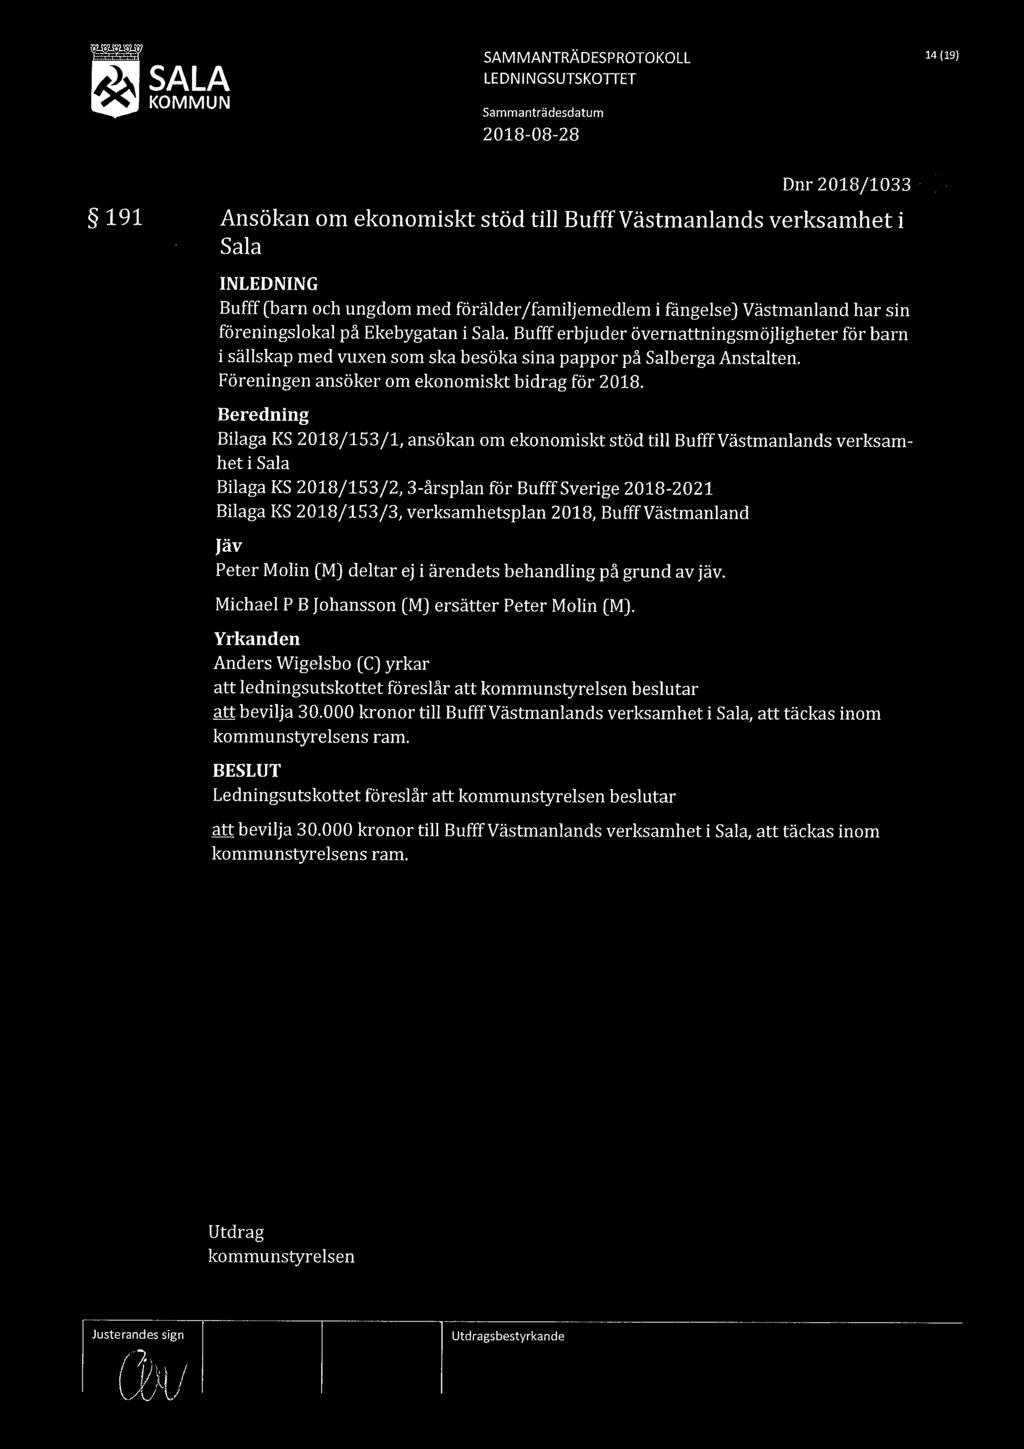 . SALA LEDNINGSUTSKOTTET SAM MANTRÄDESPROTOKOLL 14 (19) KOMMUN Sammanträdesdatum 2018-08-28 Dnr2018/1033 191 Ansökan om ekonomiskt stöd till Bufff Västmanlands verksamhet i Sala INLEDNING Bufff (barn